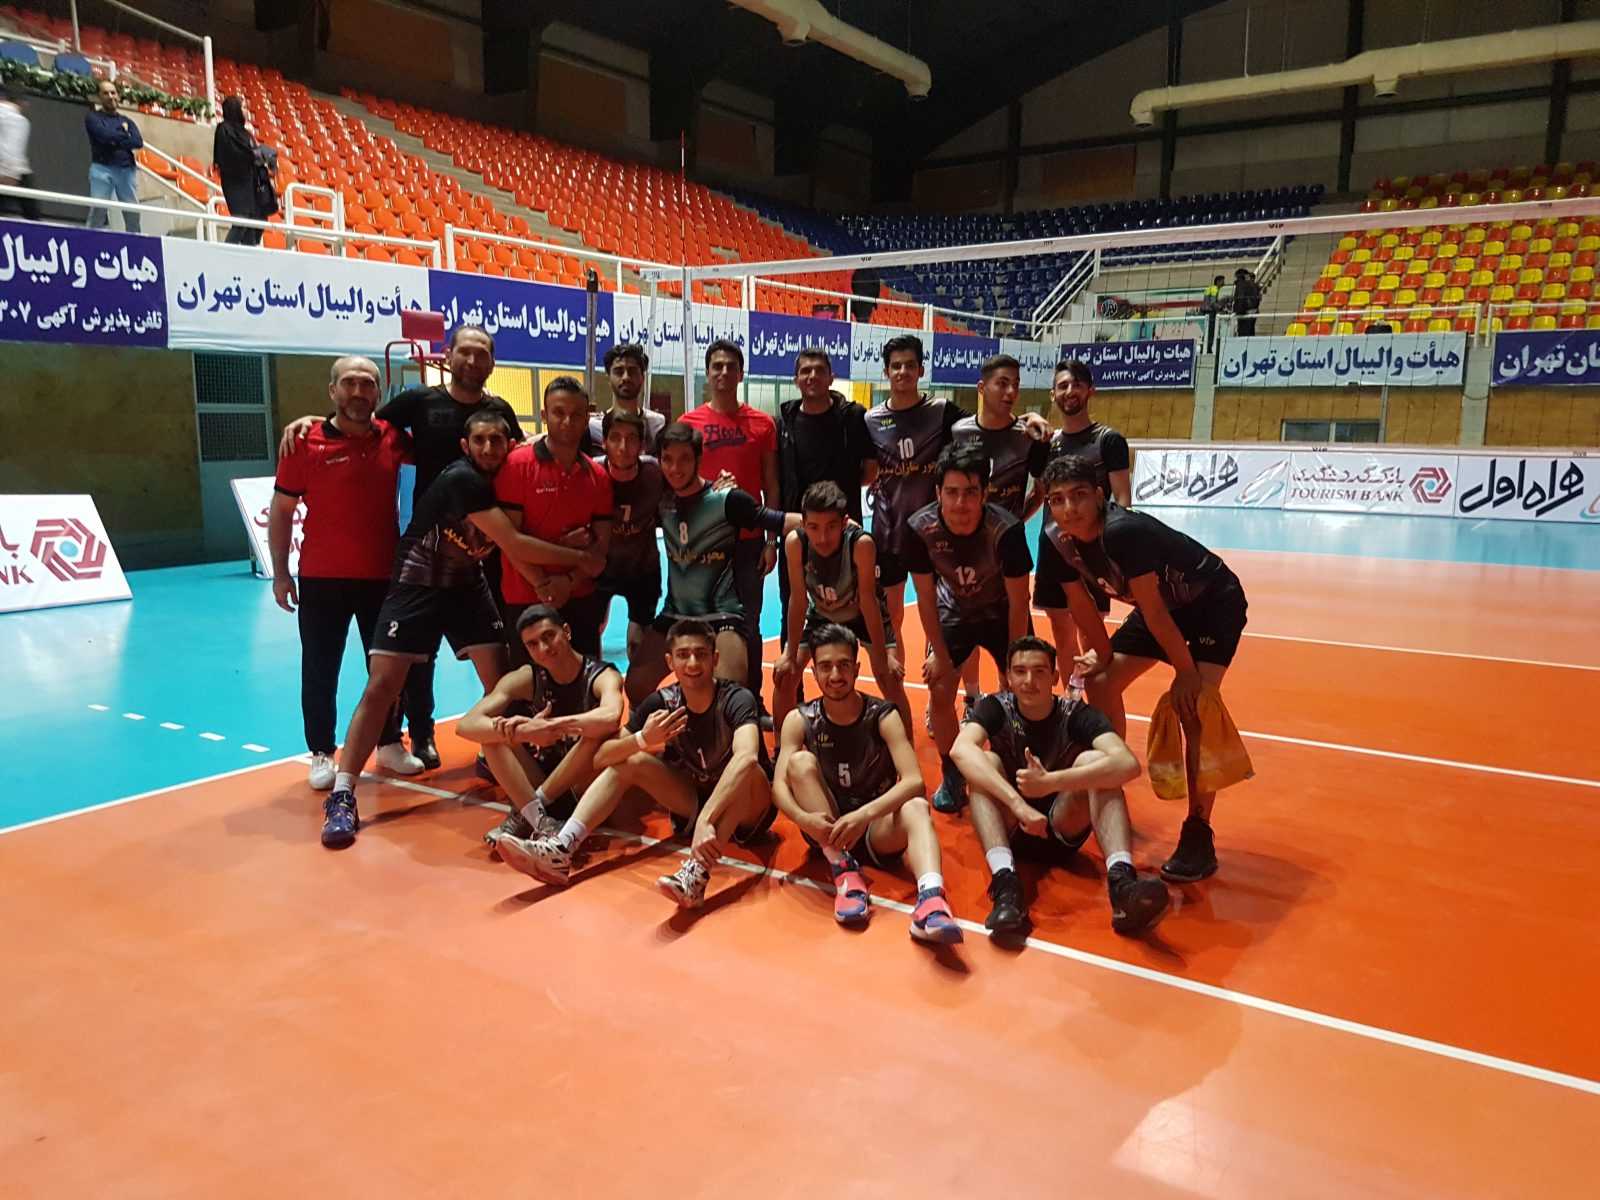 قهرمانی تیم والیبال جوانان ” محورسازان سدید ” در مسابقات لیگ دسته دوم جوانان تهران .